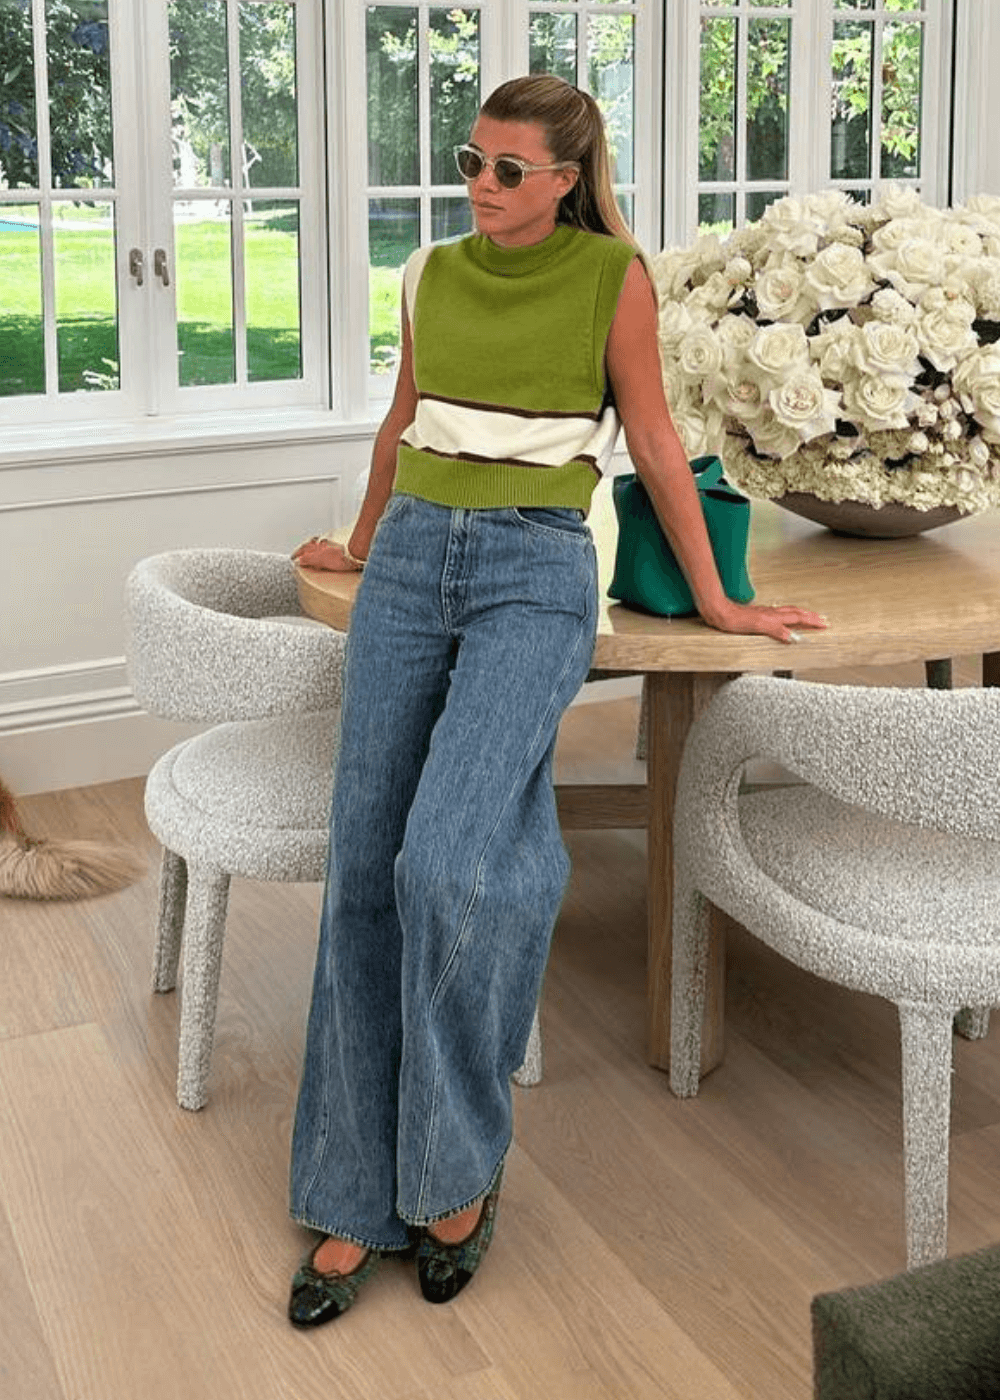 Sofia Richie - calça jeans, blusa de tricot verde e sapatilha - looks de celebridades - outono - mulher loira dentro de uma sala apoiada em um piano - https://stealthelook.com.br